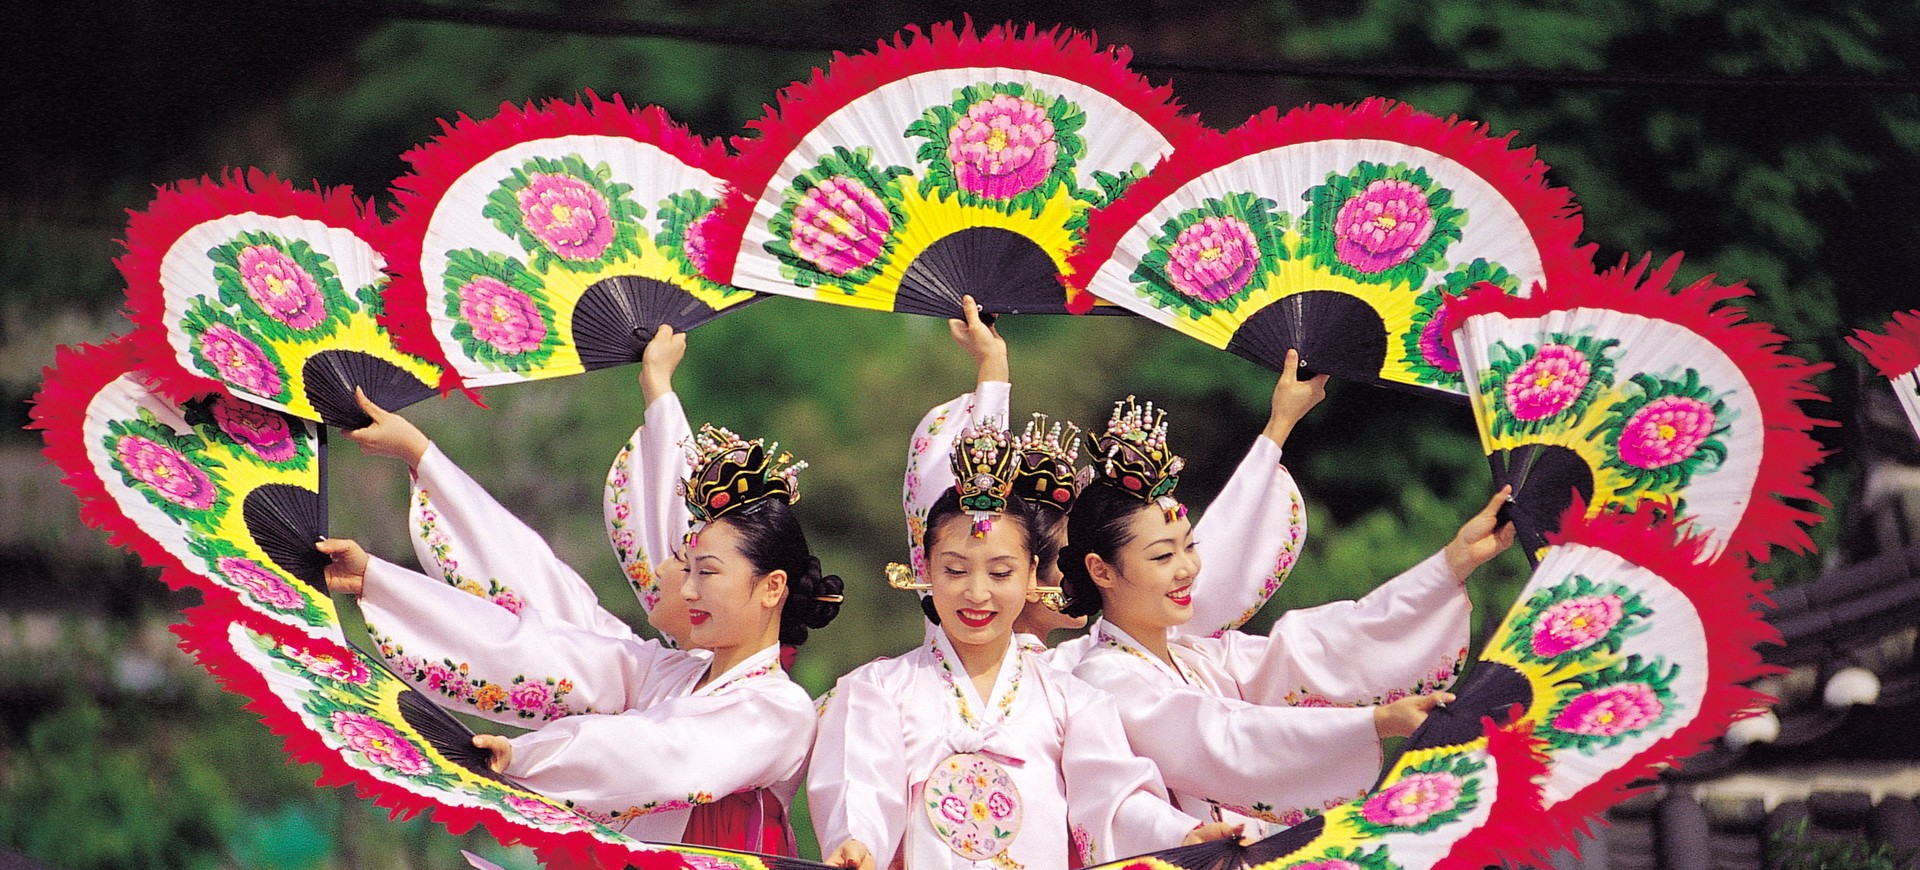 Danse traditionnelle en Corée du Sud